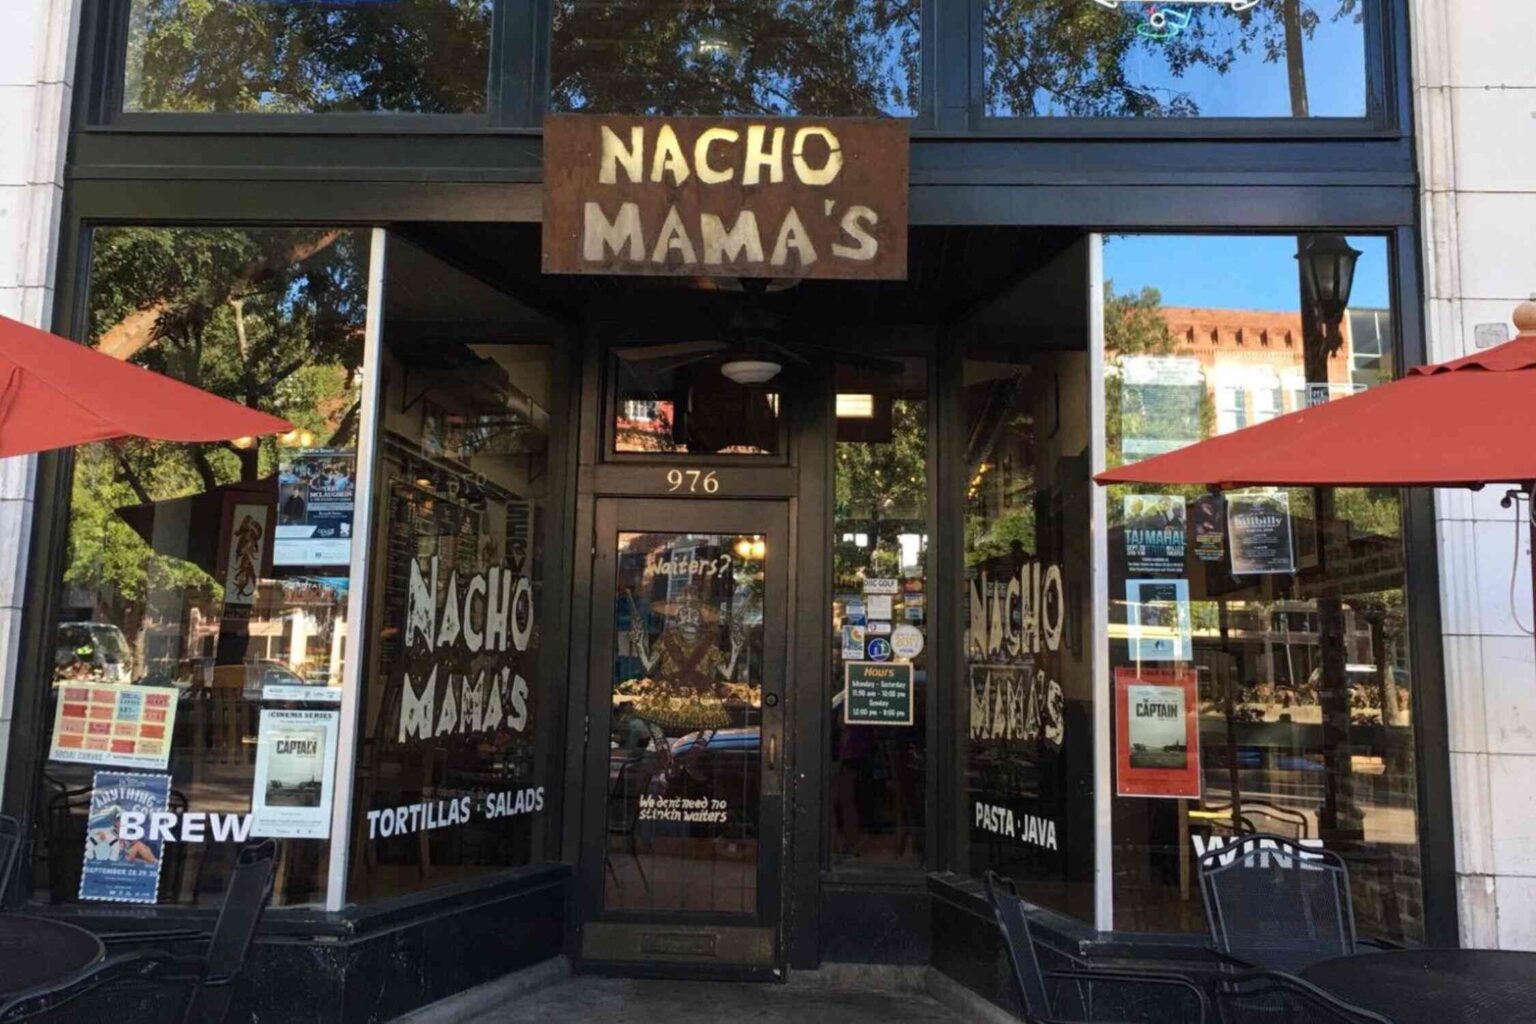 Nacho Mamas Burritos 1536x1024 